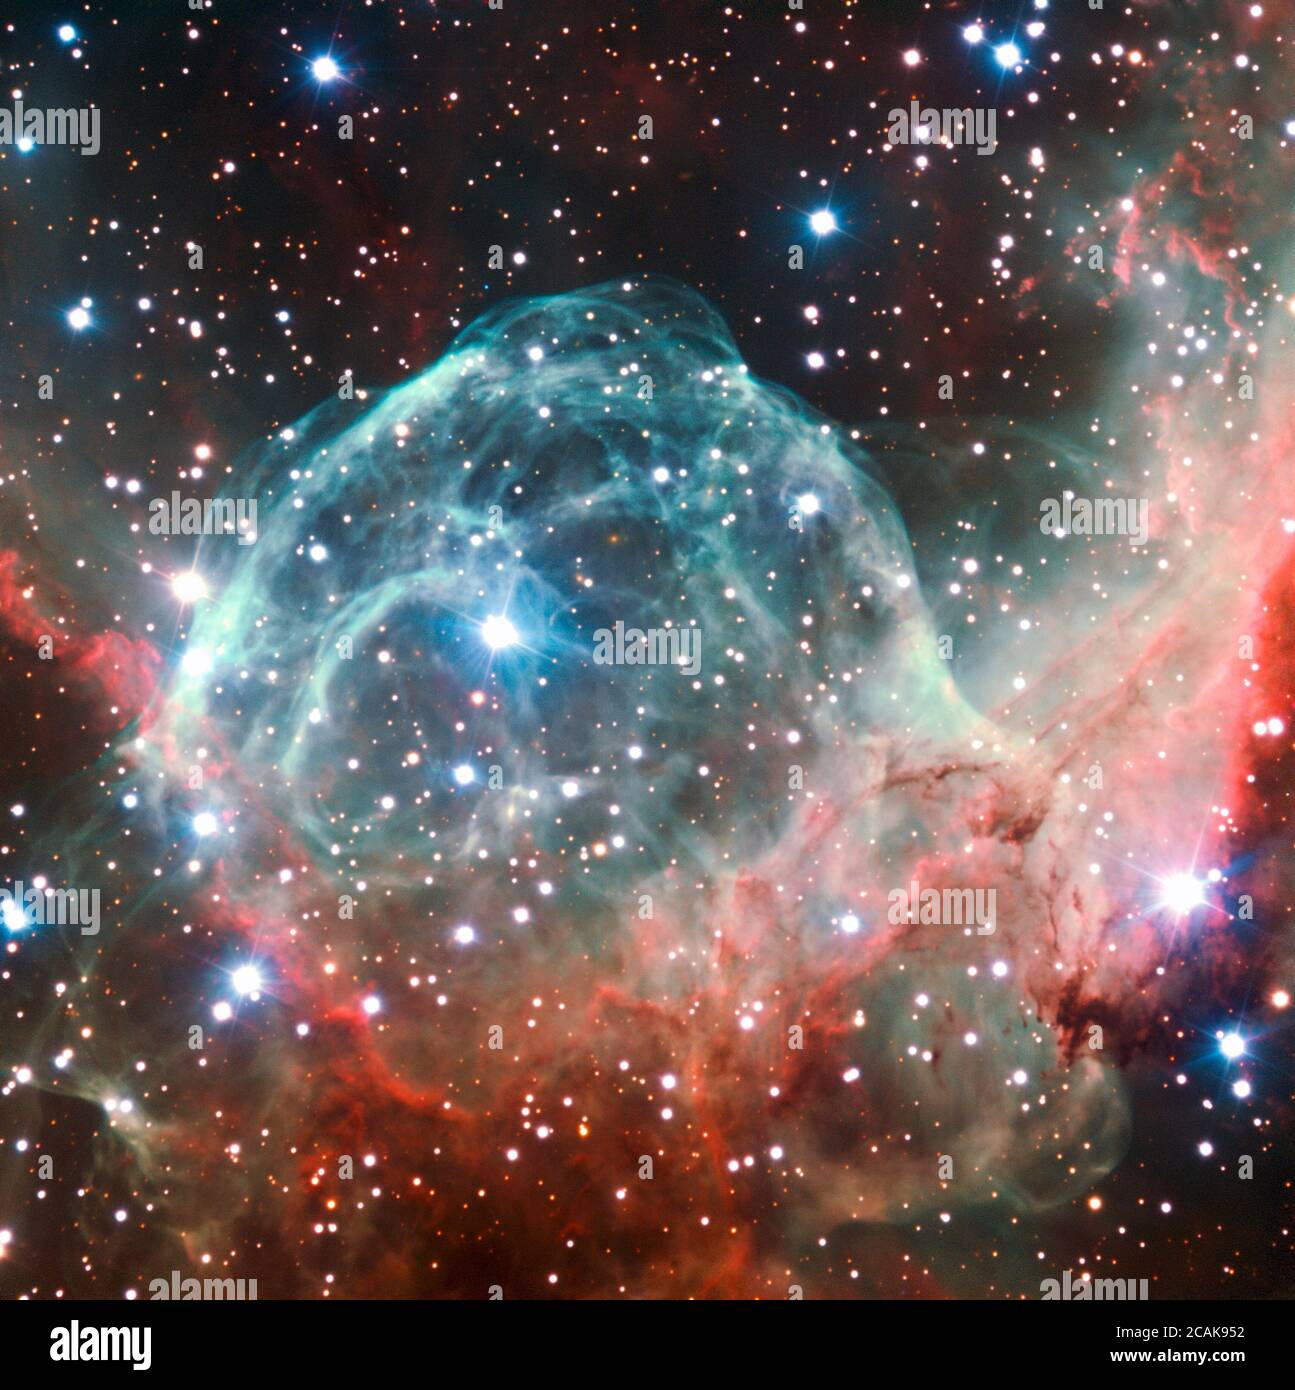 Esta imagen VLT de la Nebulosa del Casco de Thor fue tomada con ocasión del 50 aniversario de eso, 5 de octubre de 2012, con la ayuda de Brigitte Bailleul, ganadora del Tweet Your Way to the VLT! competencia. Las observaciones fueron transmitidas en vivo por internet desde el Observatorio Paranal de Chile. Este objeto, también conocido como NGC 2359, se encuentra en la constelación de Canis mayor (el Gran Perro). La nebulosa en forma de casco está a unos 15 000 años luz de la Tierra y tiene más de 30 años luz de diámetro. El casco es una burbuja cósmica, soplada como el viento de la brillante y masiva estrella cerca del centro de la burbuja Foto de stock